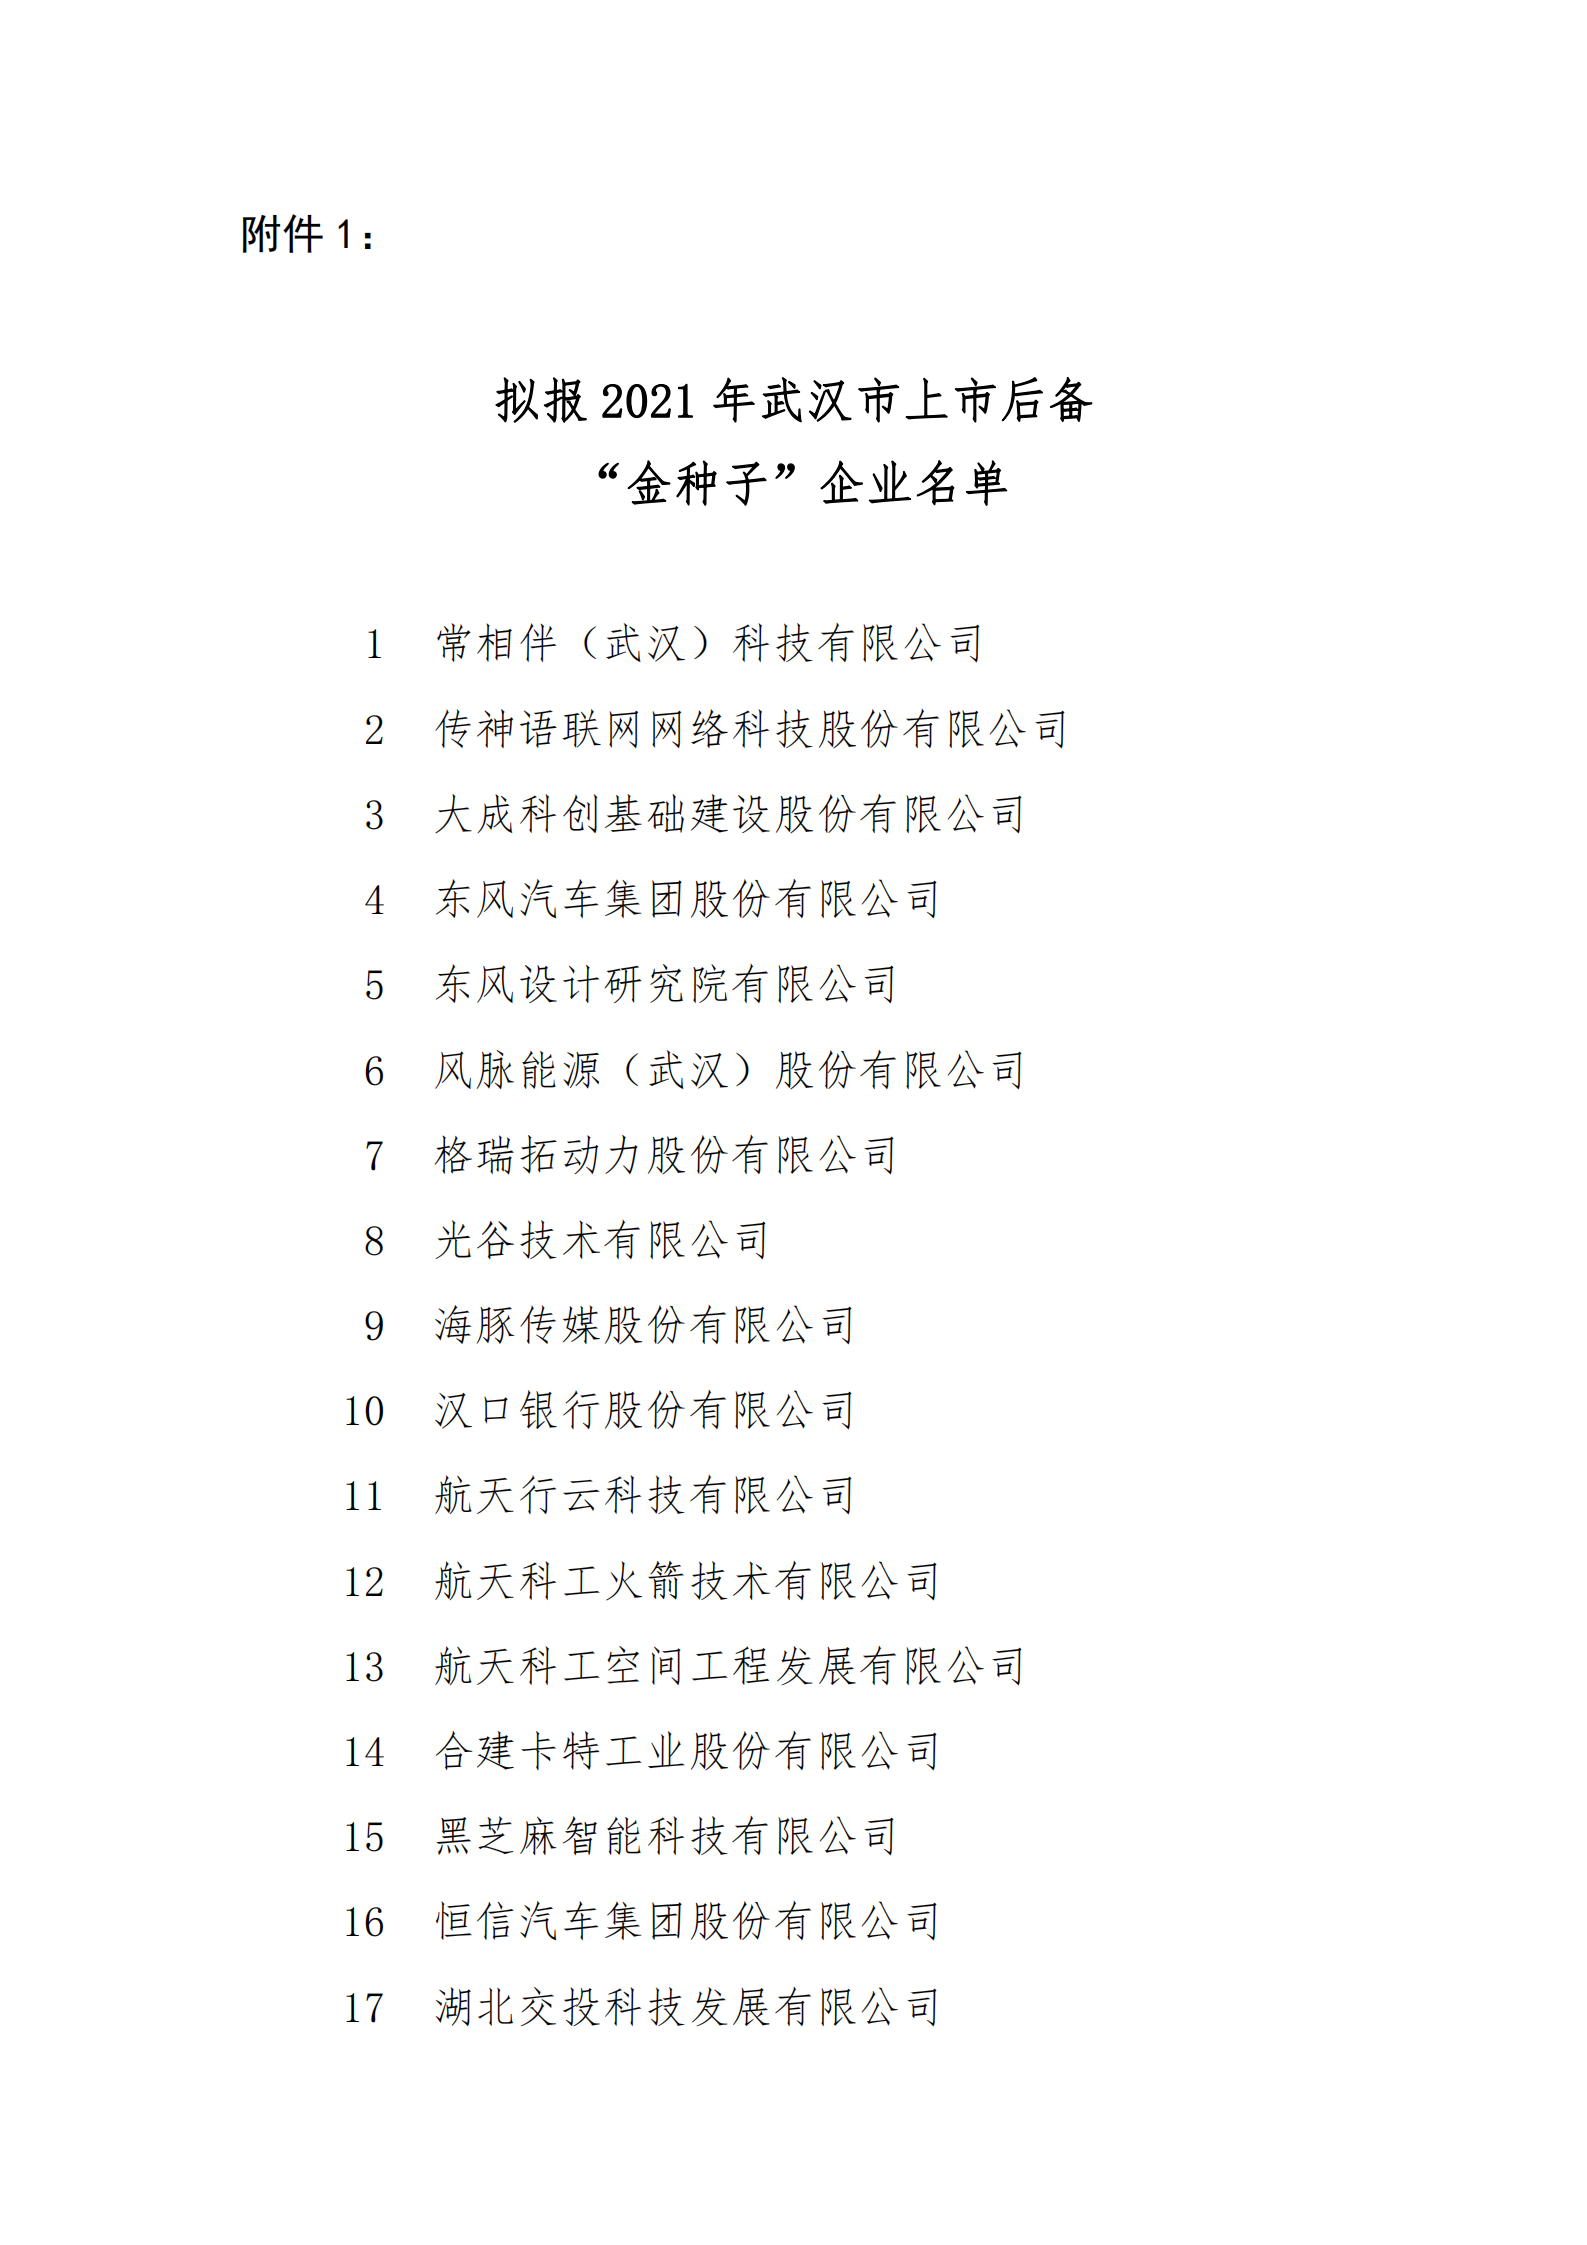 附件1：拟报2021年武汉市上市后备 “金种子”企业名单_00.png